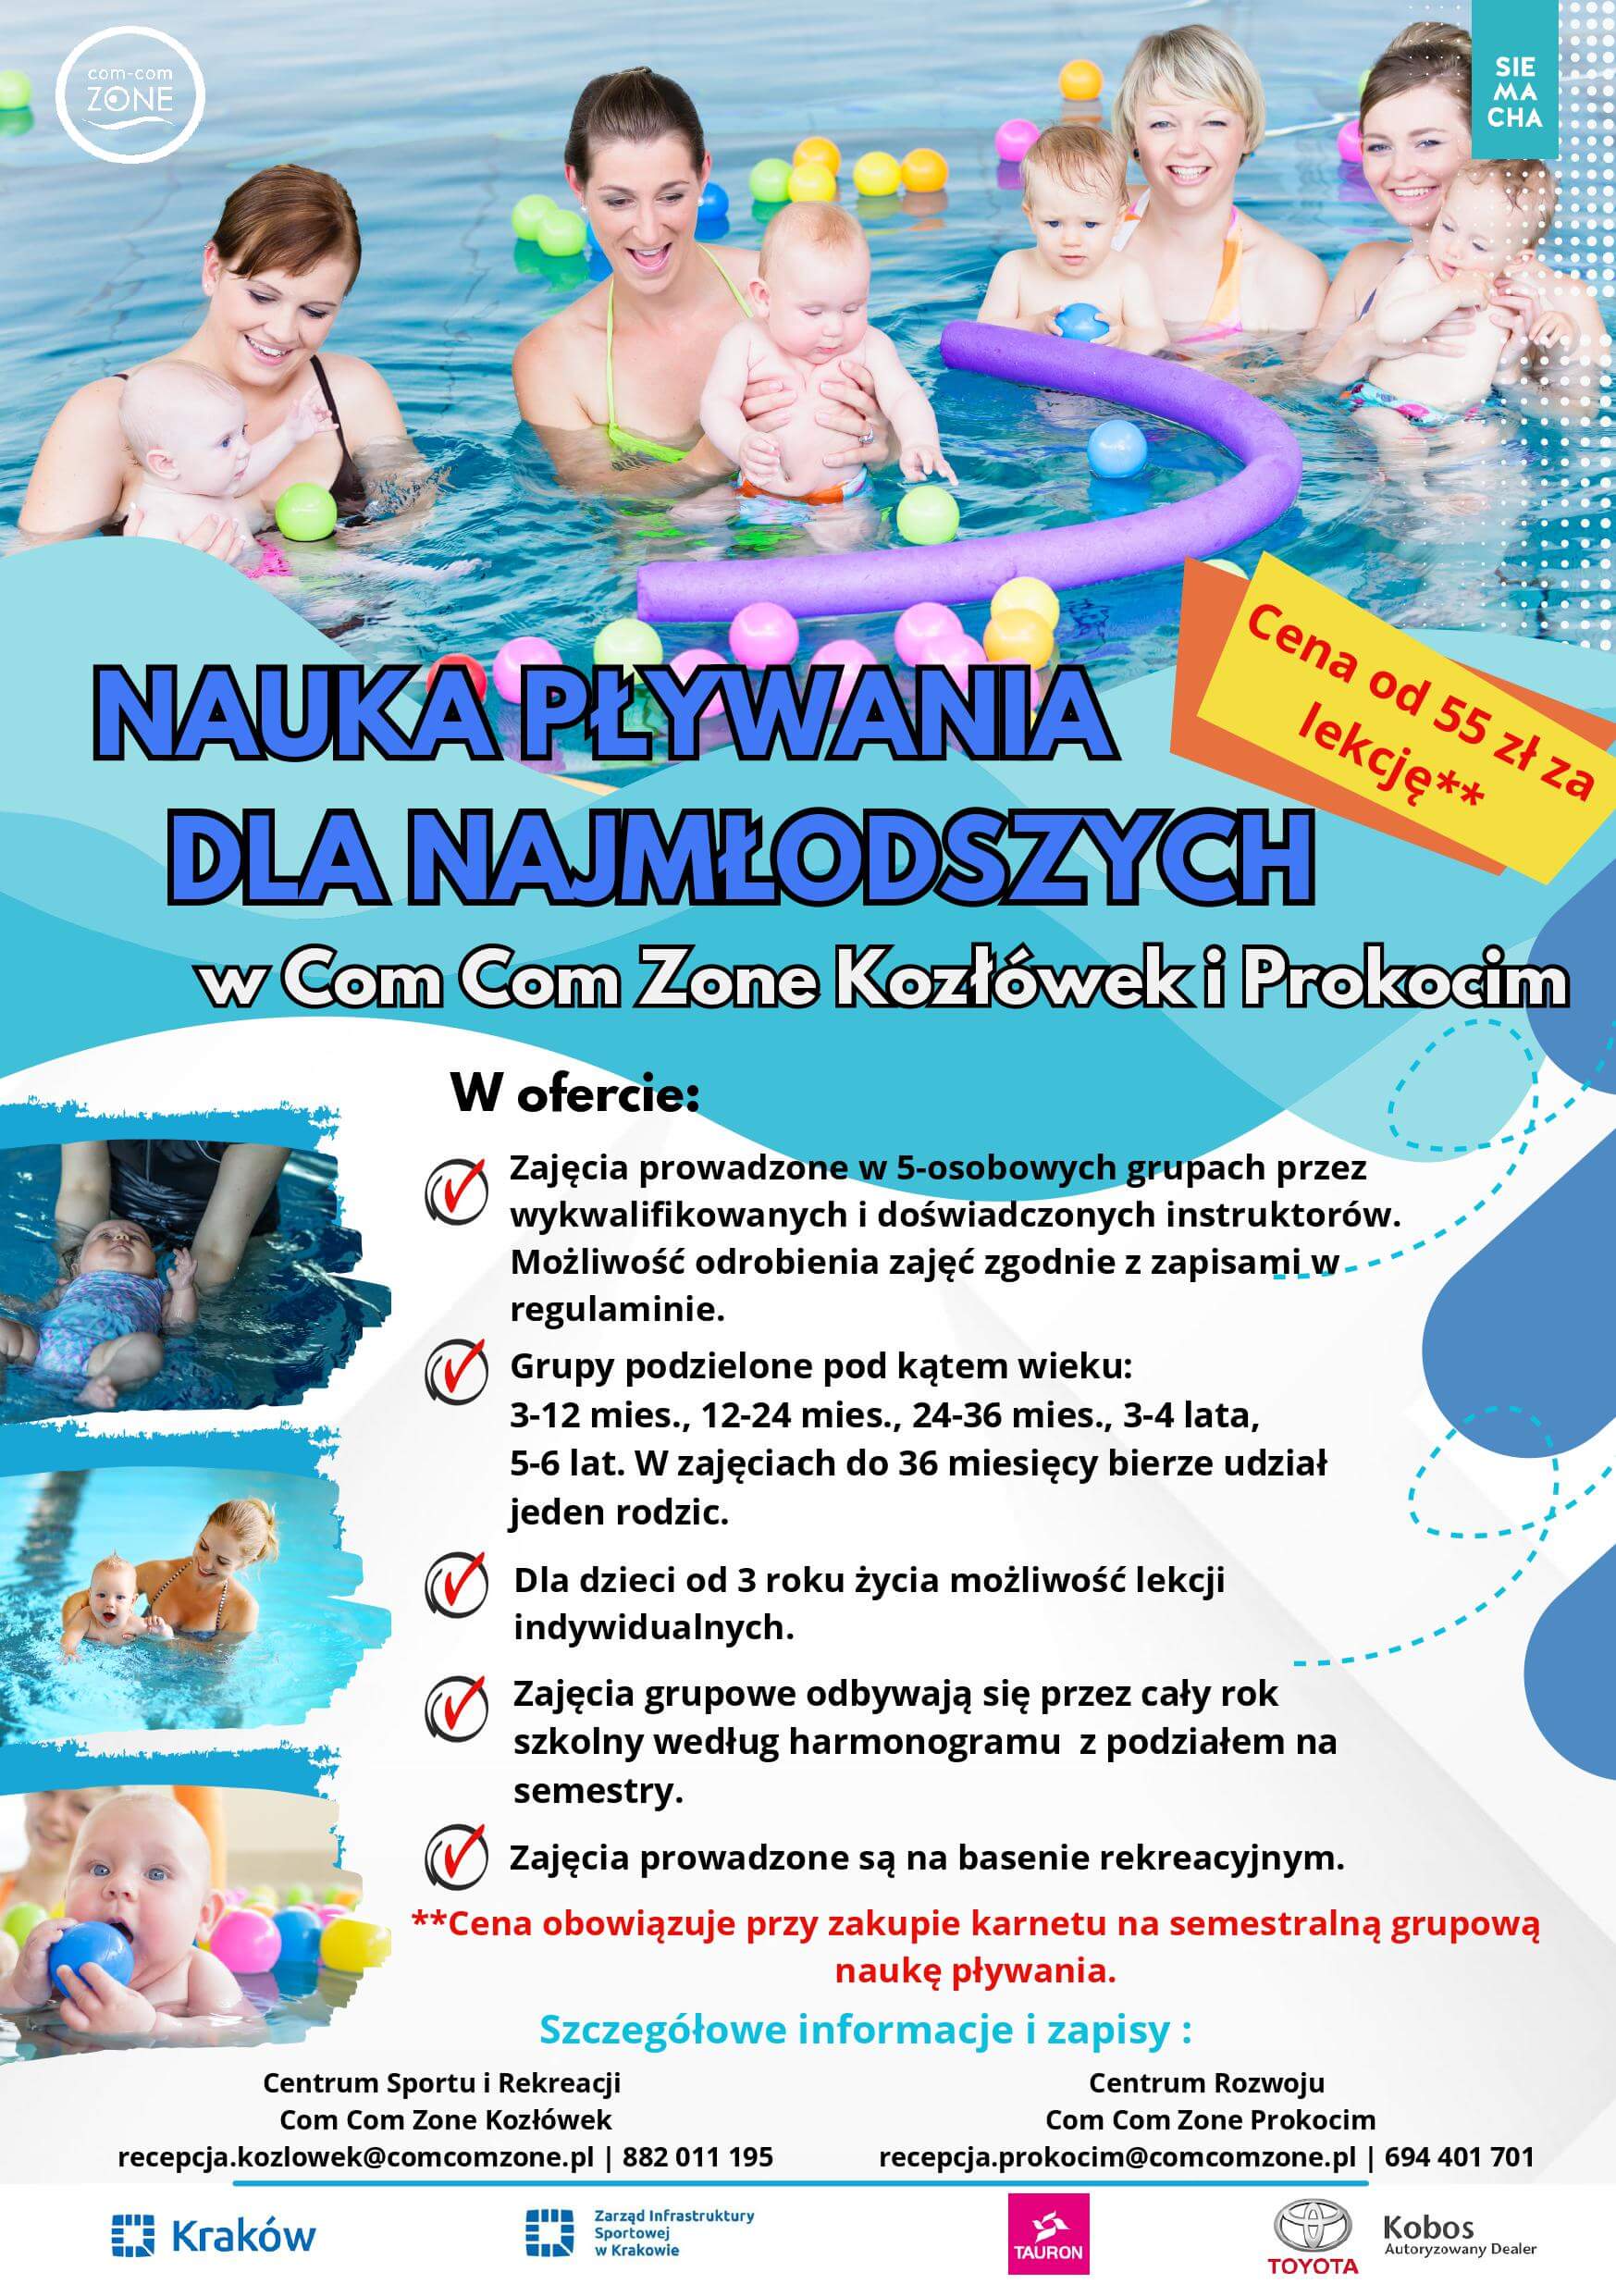 Nauka pływania dla dzieci od 3 miesiąca życia do 5 lat na basenie rekreacyjnym